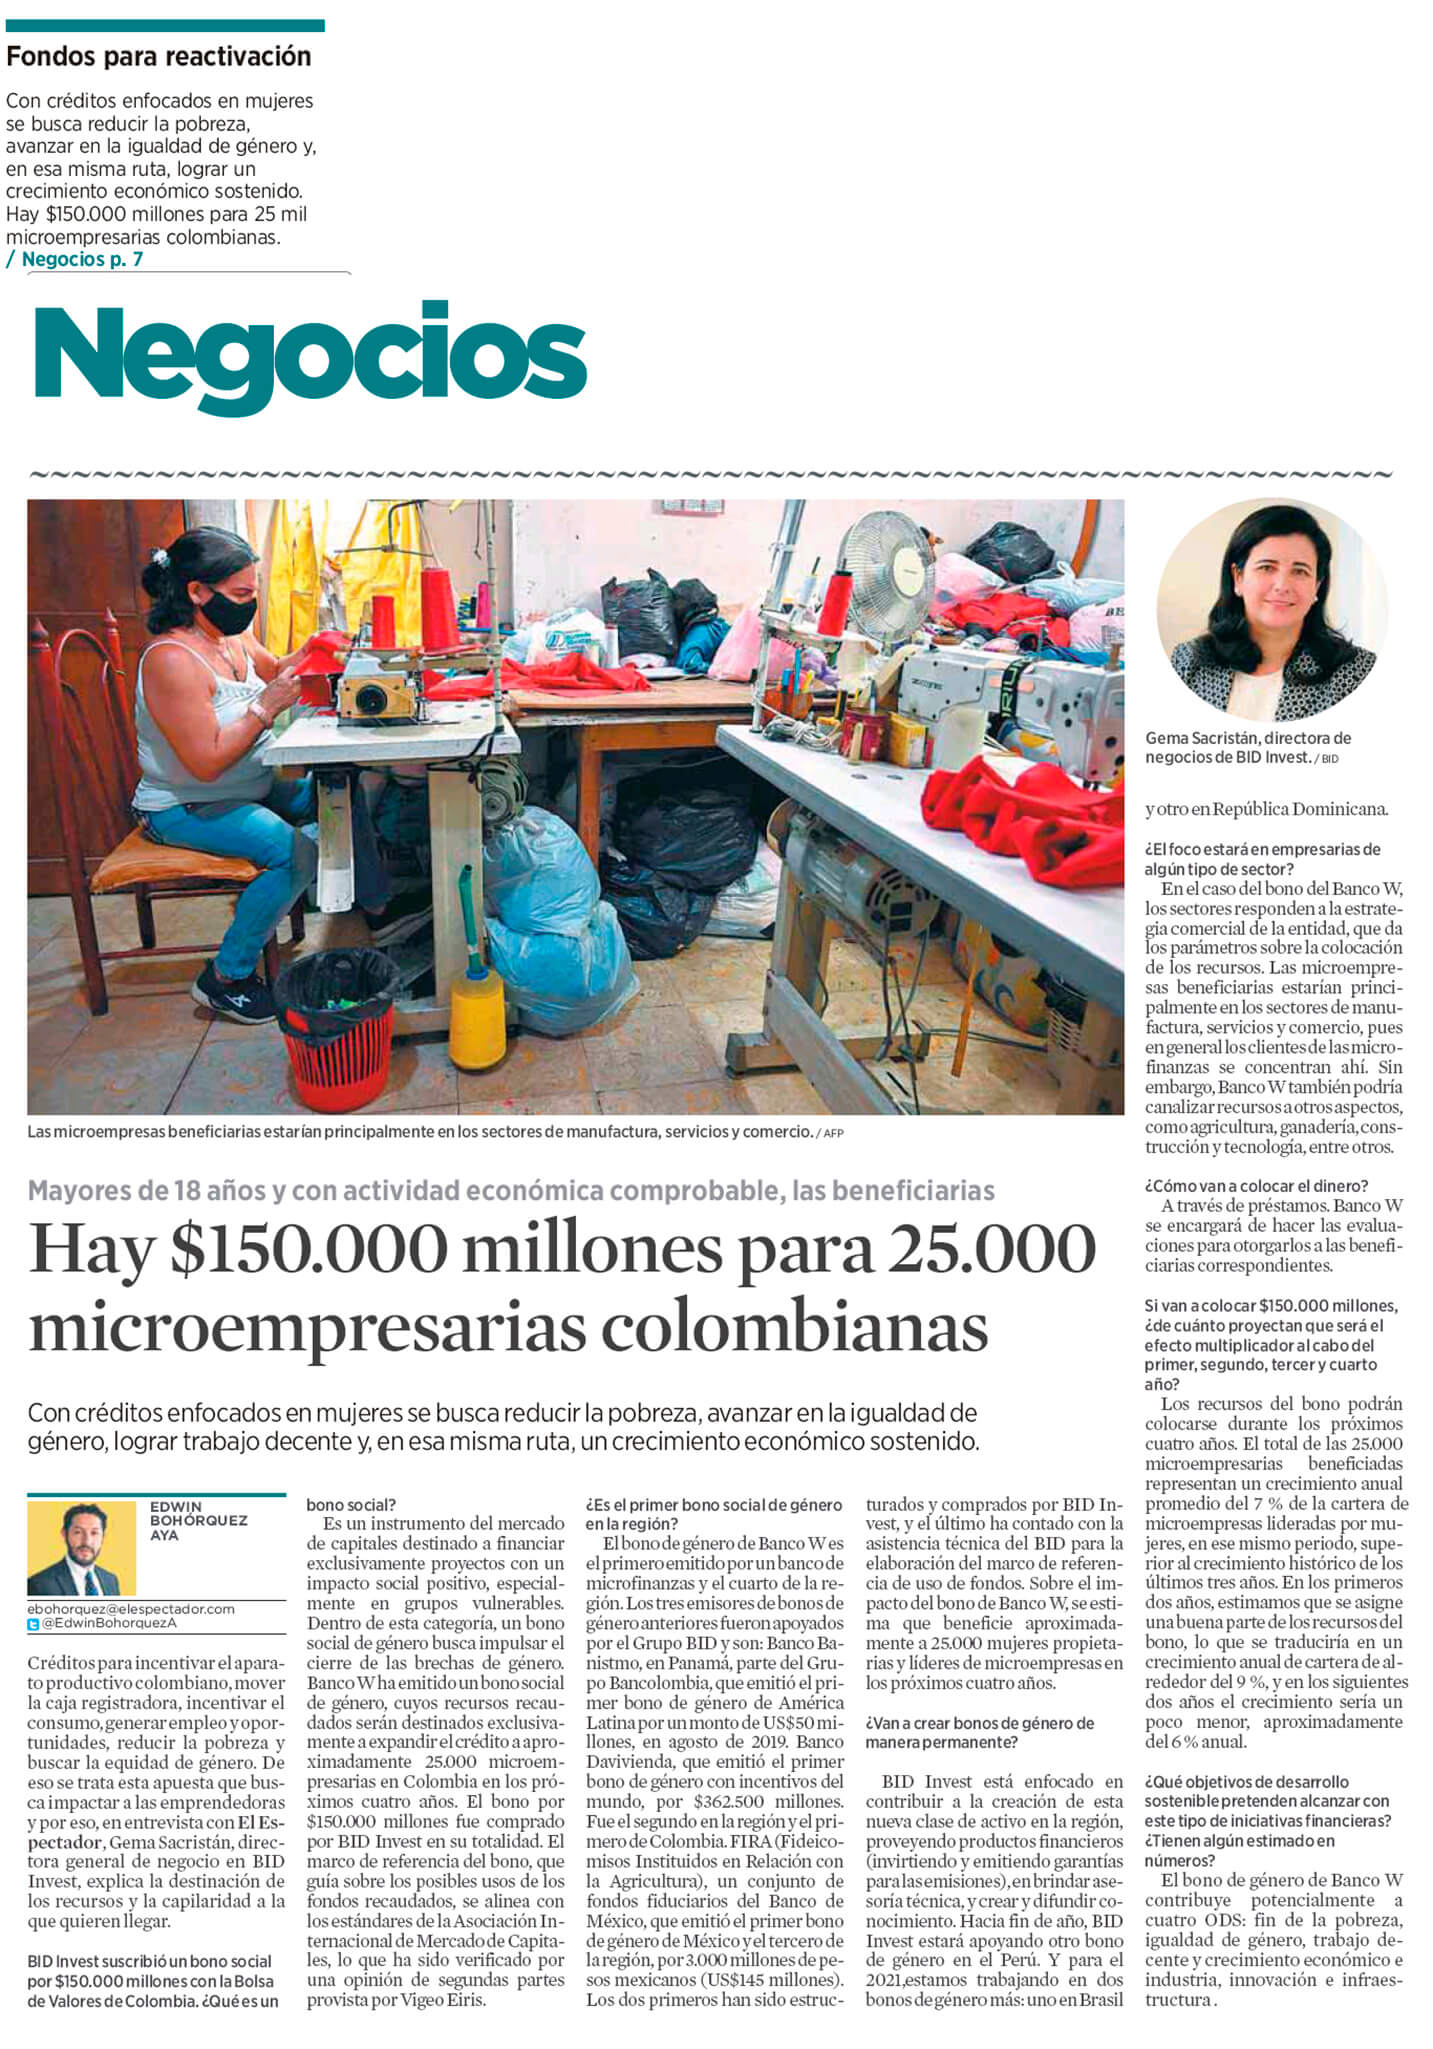 Hay $150.000 millones para 25.000 microempresarias colombianas